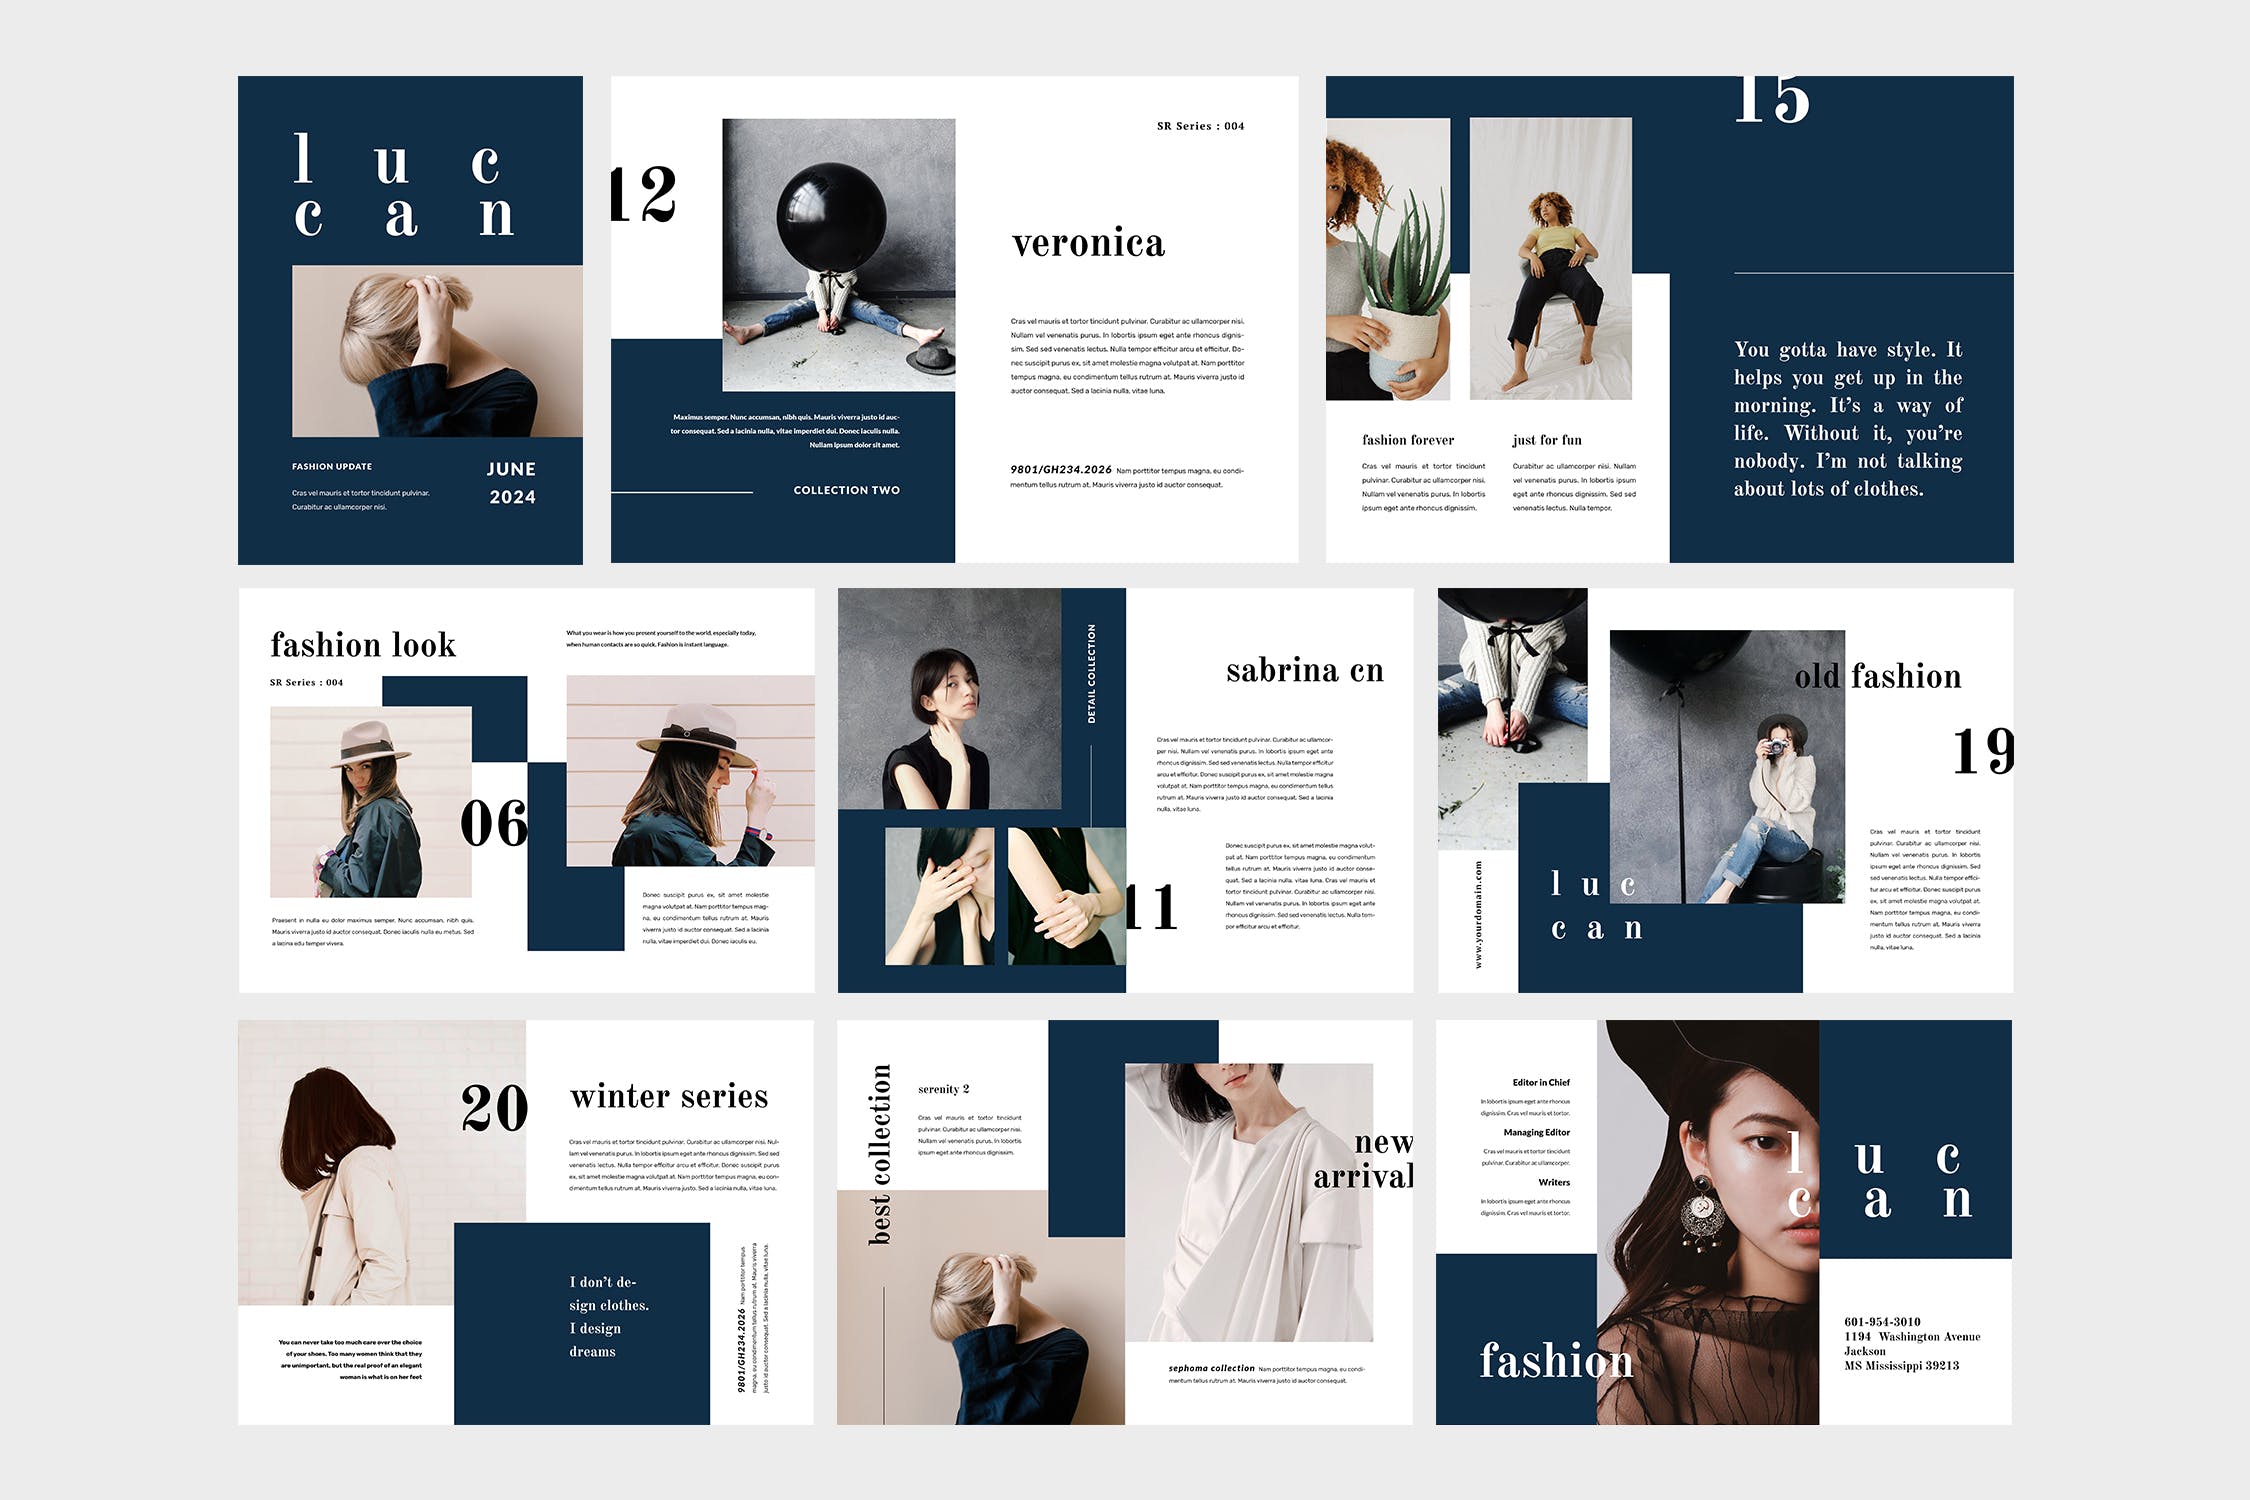 高端女性服装品牌产品非凡图库精选目录设计模板 Luccan Fashion Lookbook Catalogue插图(4)